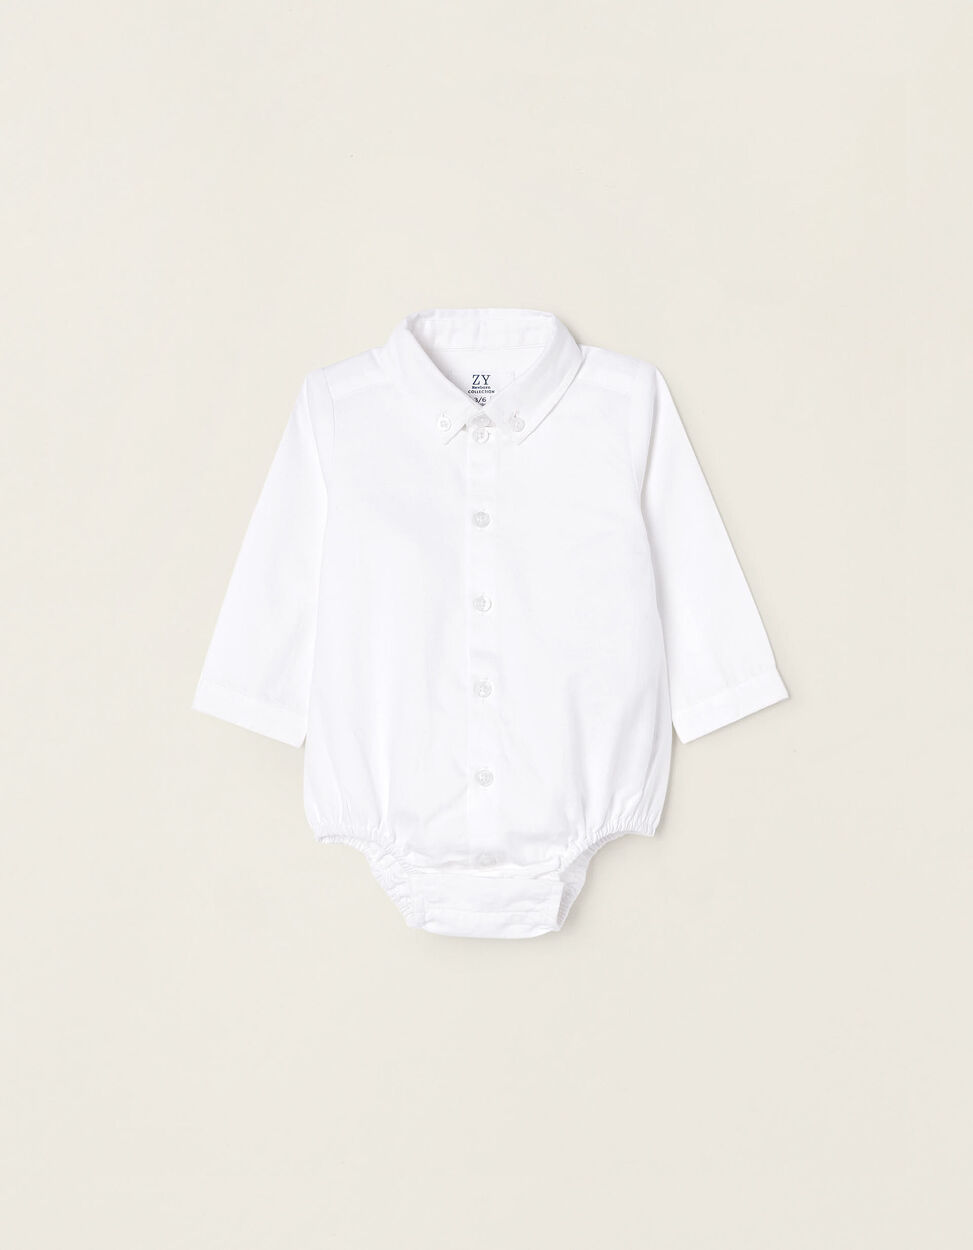 Body Camisa de Algodón para Recién Nacido, Blanco Online